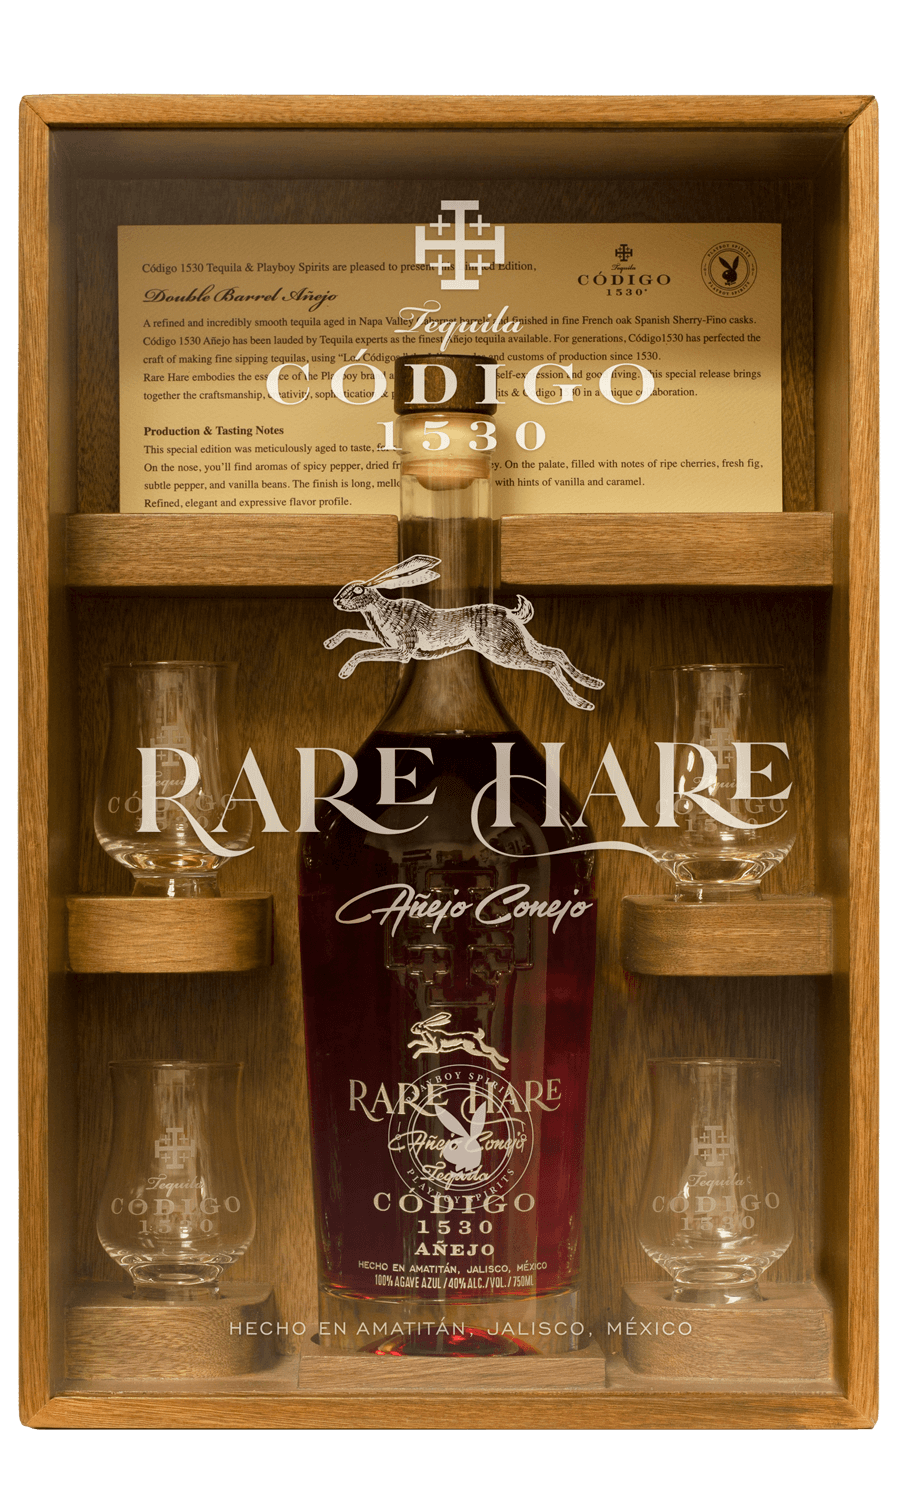 [BUY] Playboy | Codigo 1530 'Rare Hare' Double Barrel Anejo Tequila at CaskCartel.com